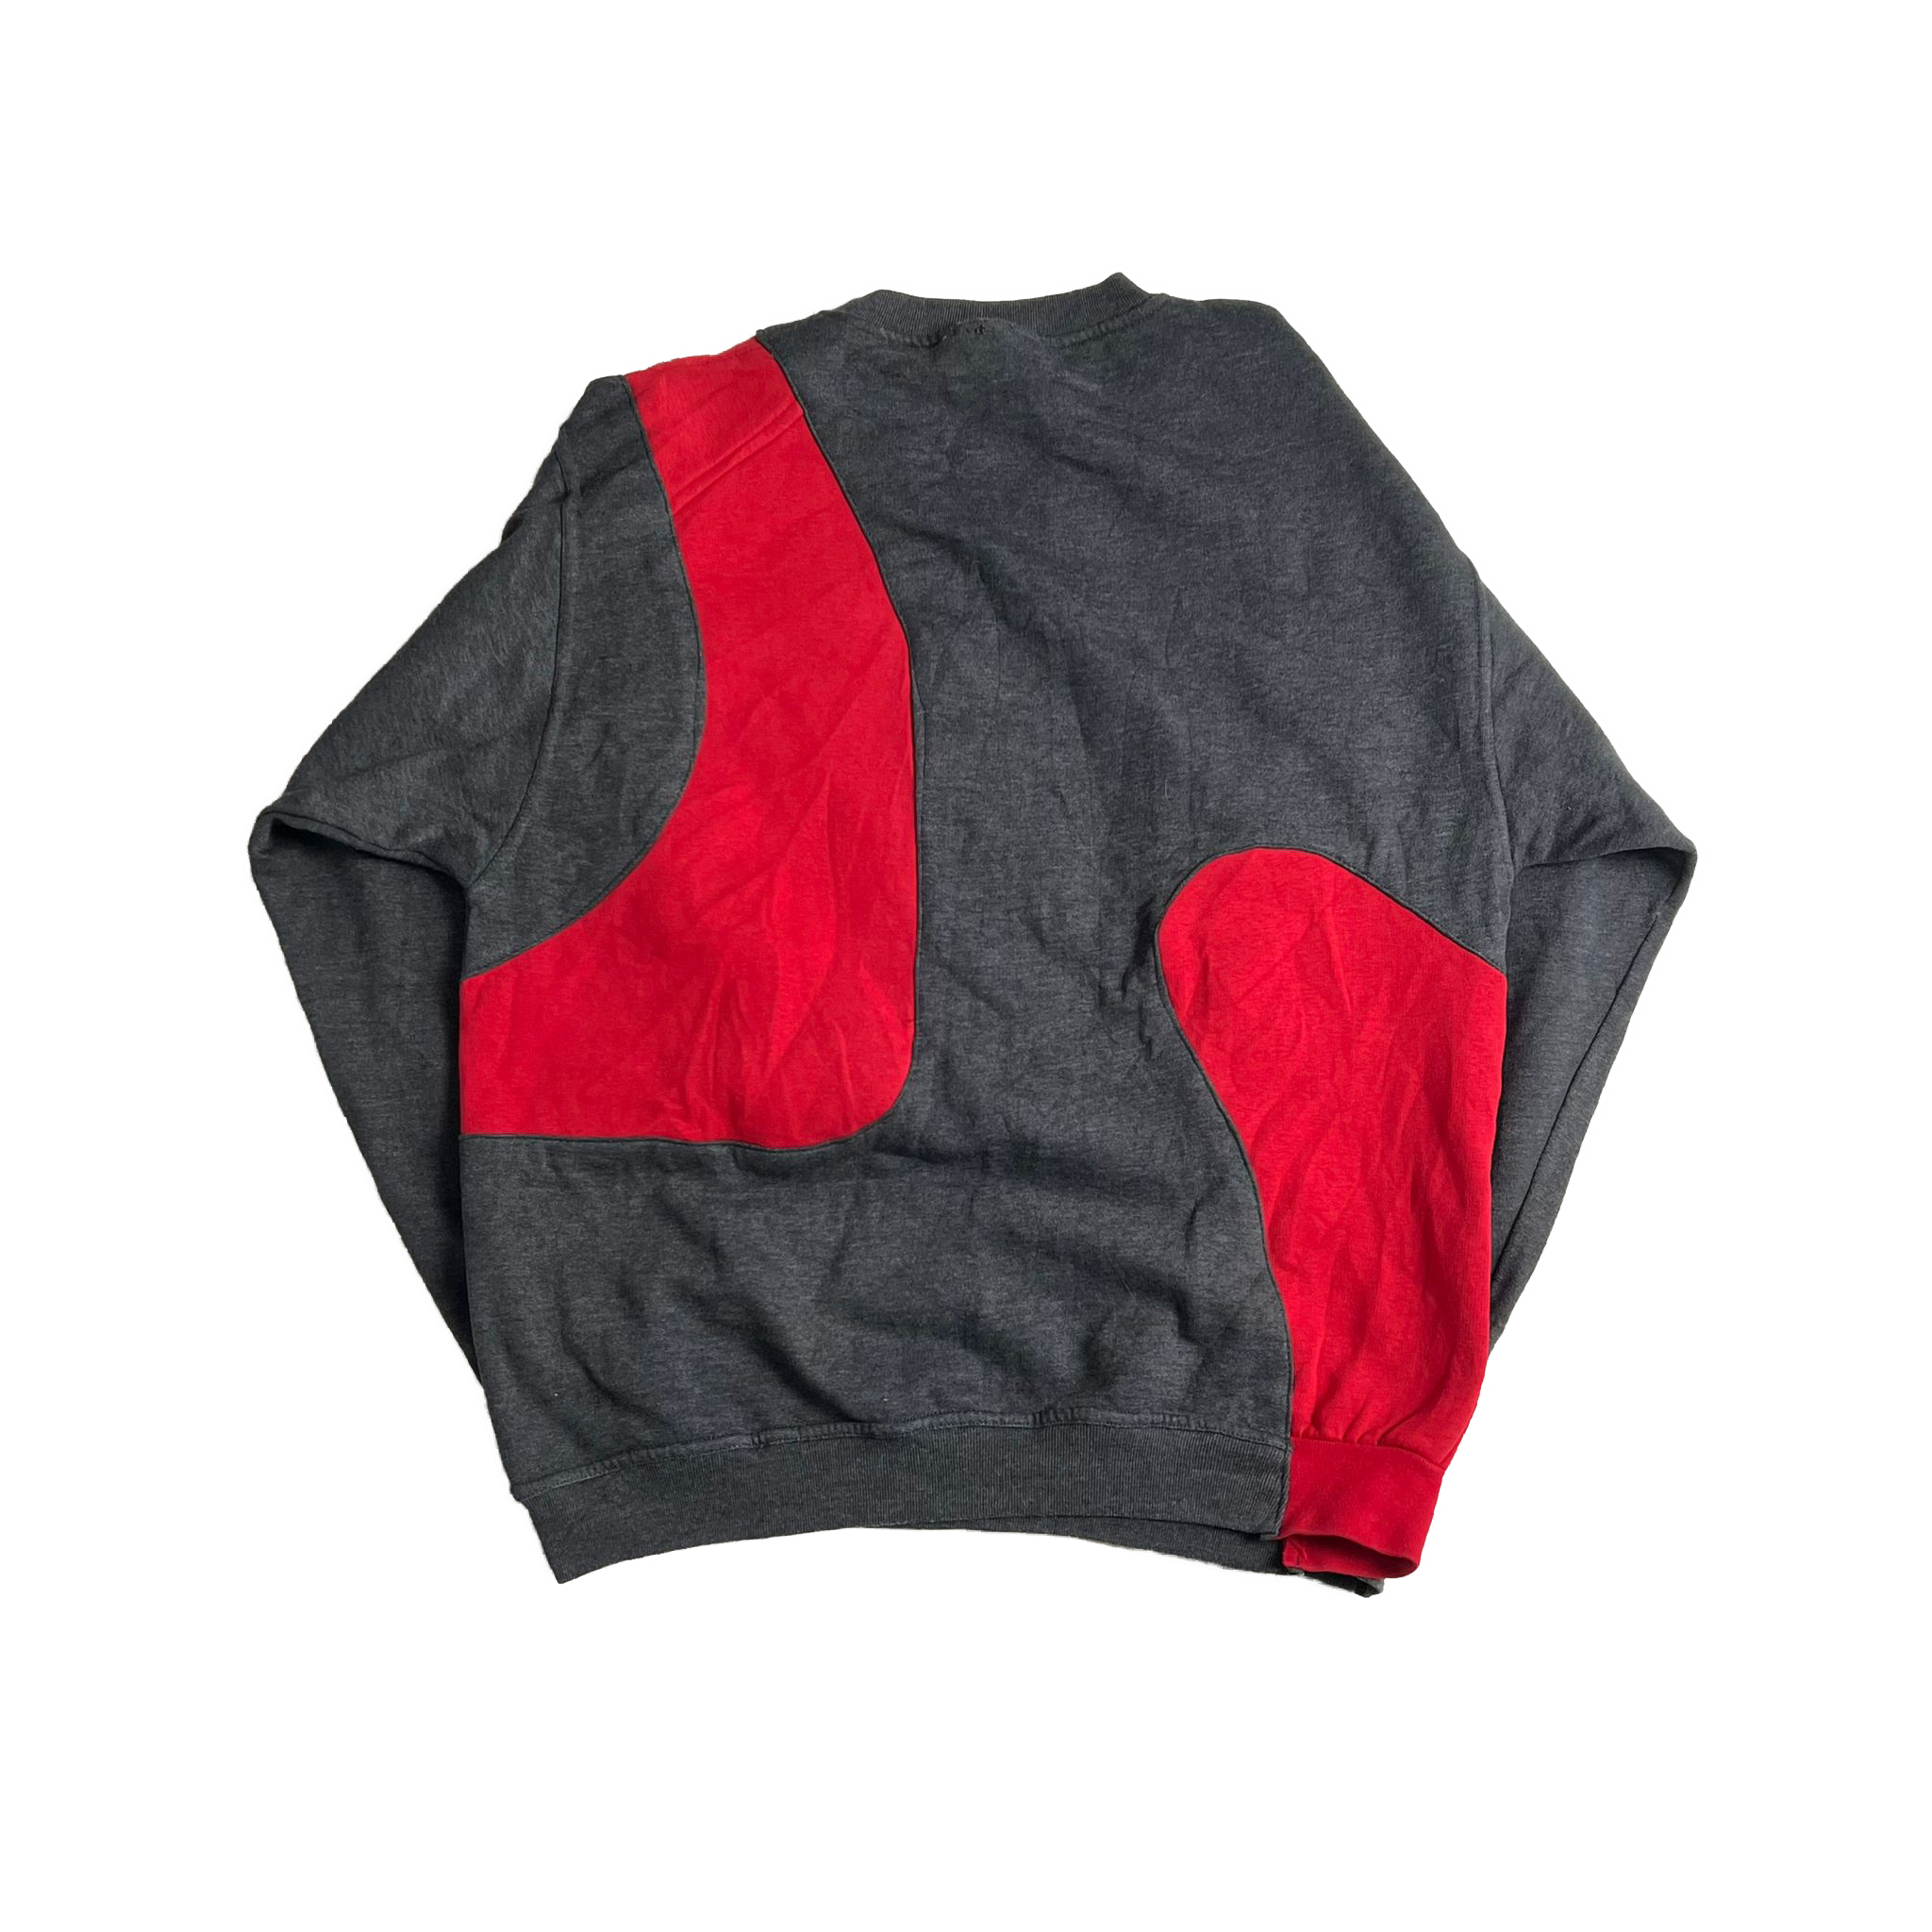 Reworked Nike sweatshirt